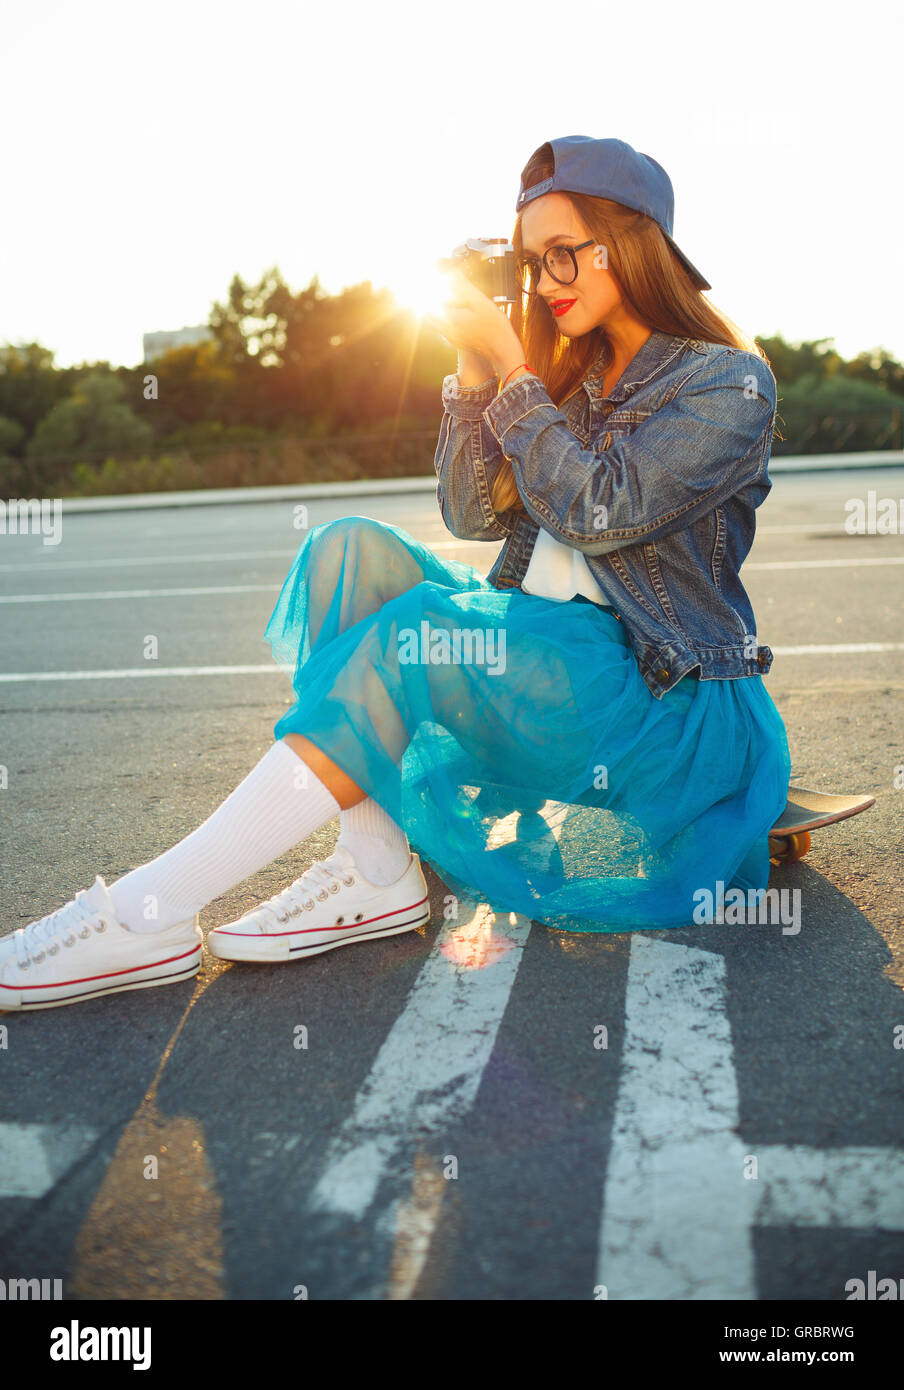 Estate Outdoor Lifestyle ritratto della ragazza hipster con la vecchia macchina fotografica Foto Stock